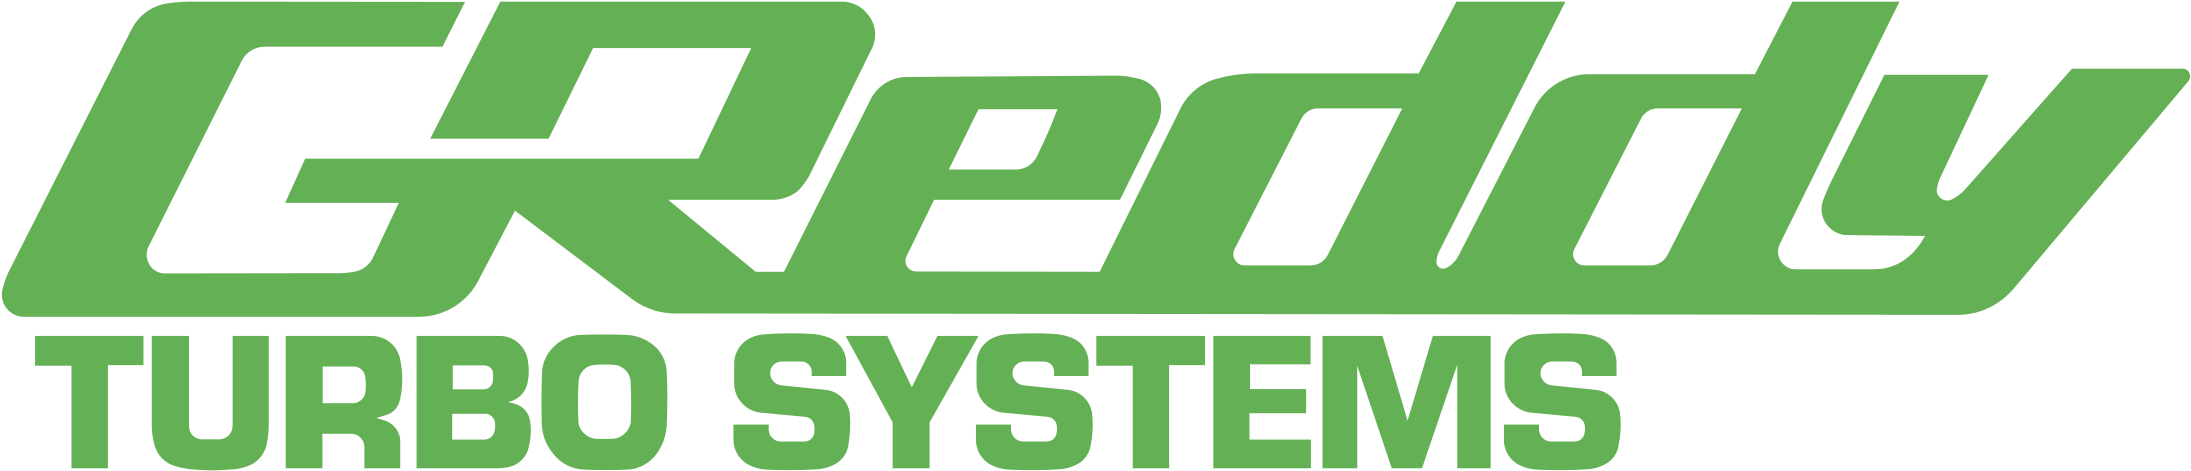 Greddy Logo - HD Greddy Systems Logo Turbo System Logo, Free Unlimited